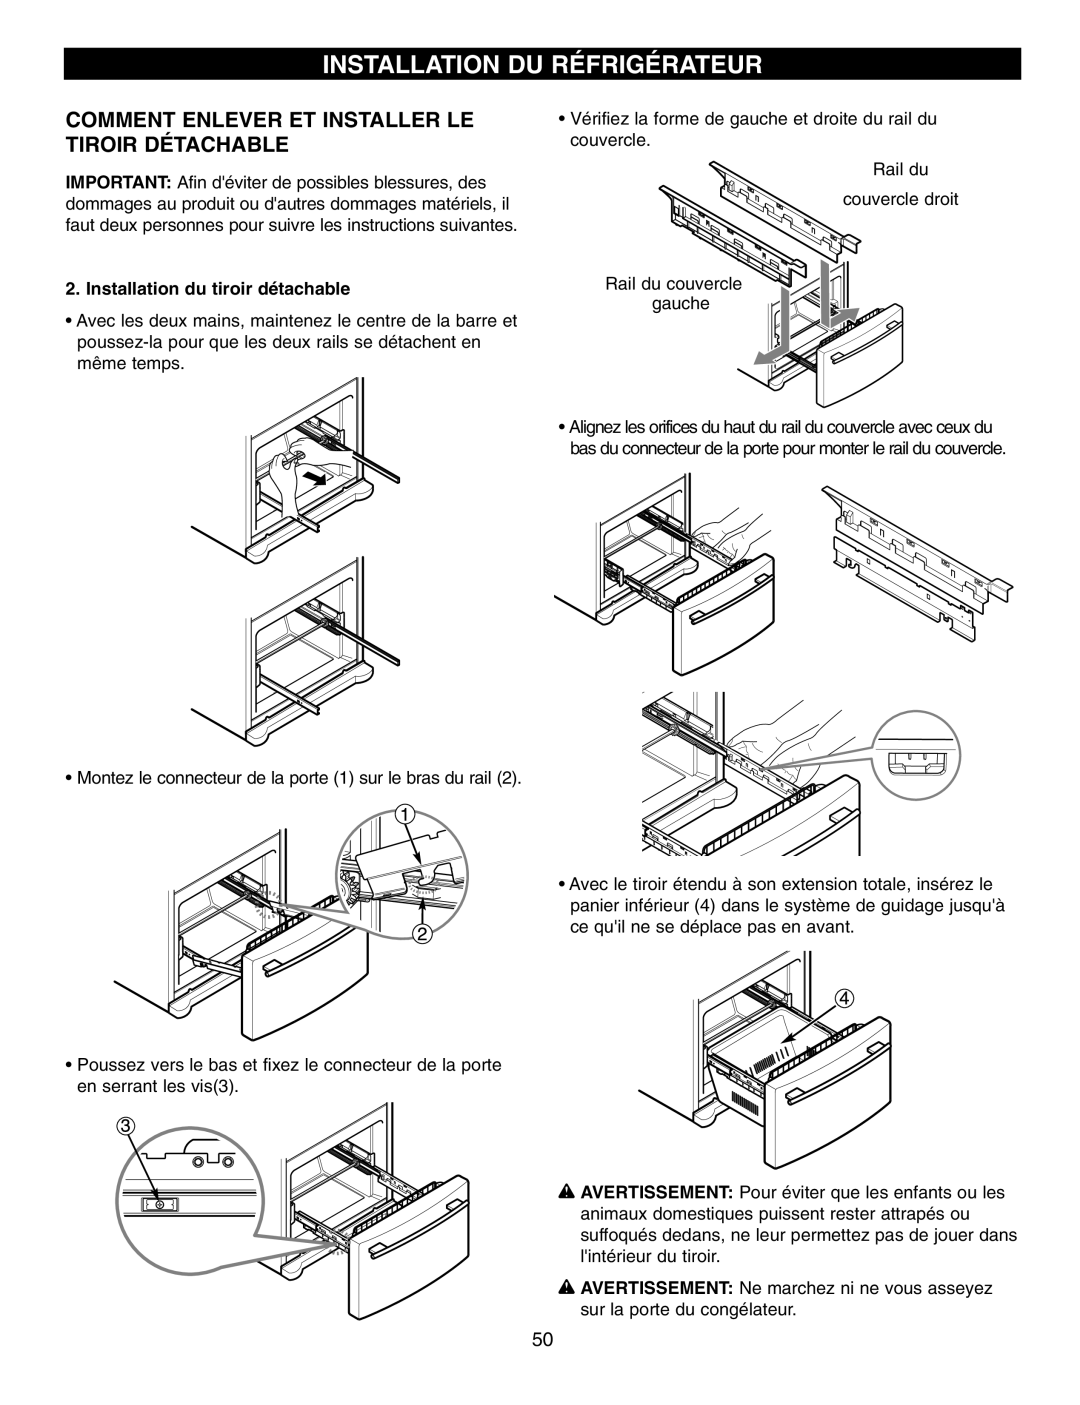 LG Electronics LFX21970, LFX25960 manual Installation Du Réfrigérateur, Comment Enlever Et Installer Le Tiroir Détachable 